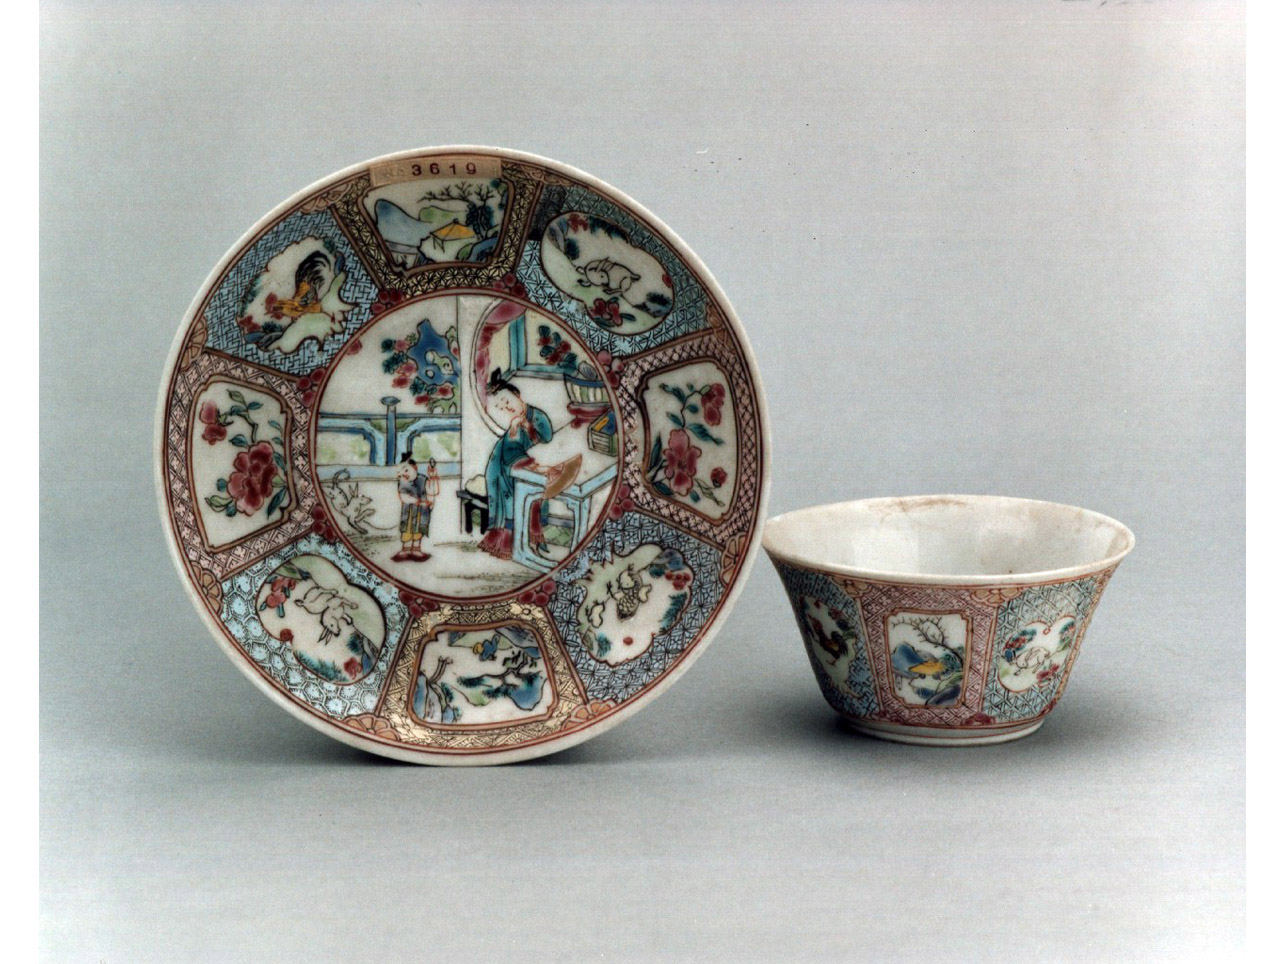 scena di vita domestica/ motivi decorativi geometrici e vegetali (tazzina) - manifattura cinese (sec. XVIII)